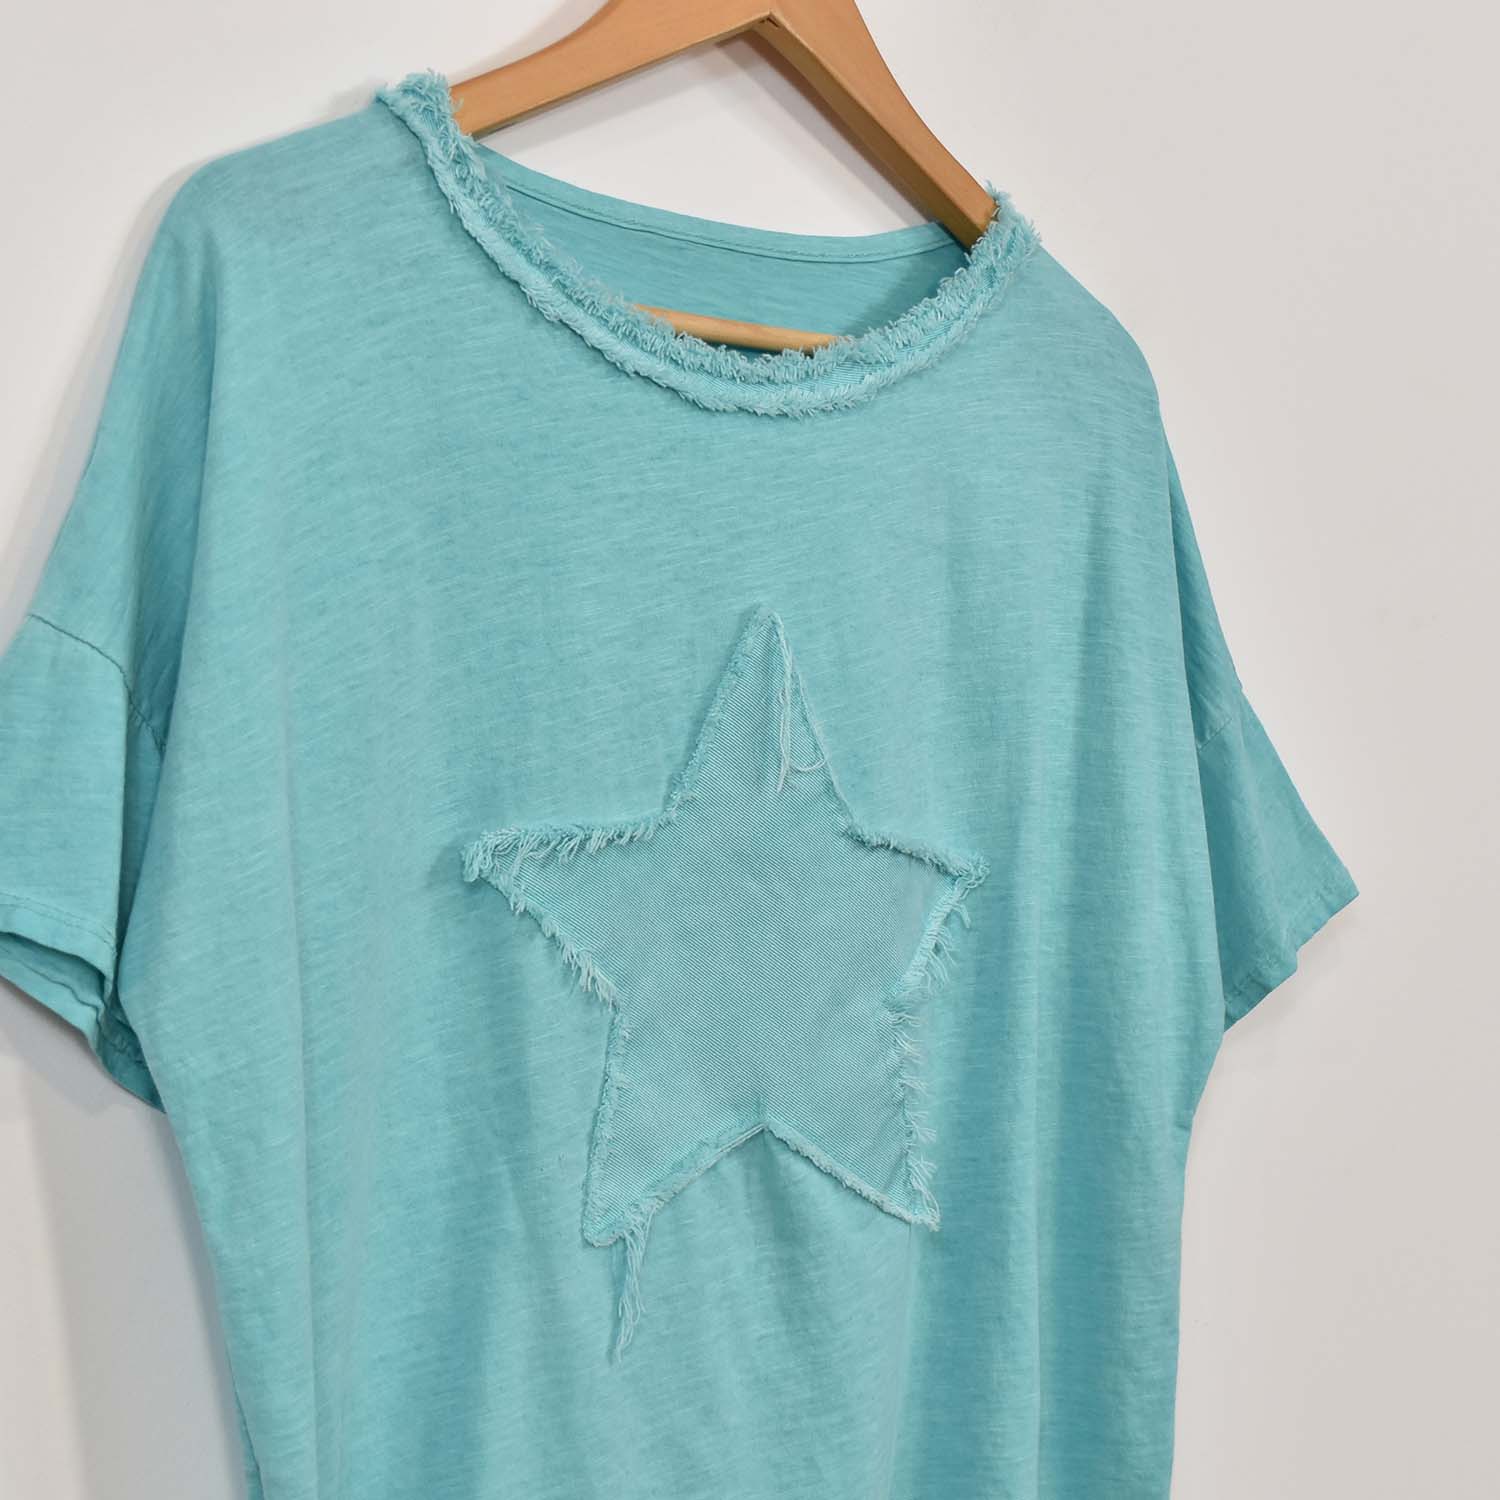 Camiseta estrella flecos turquesa